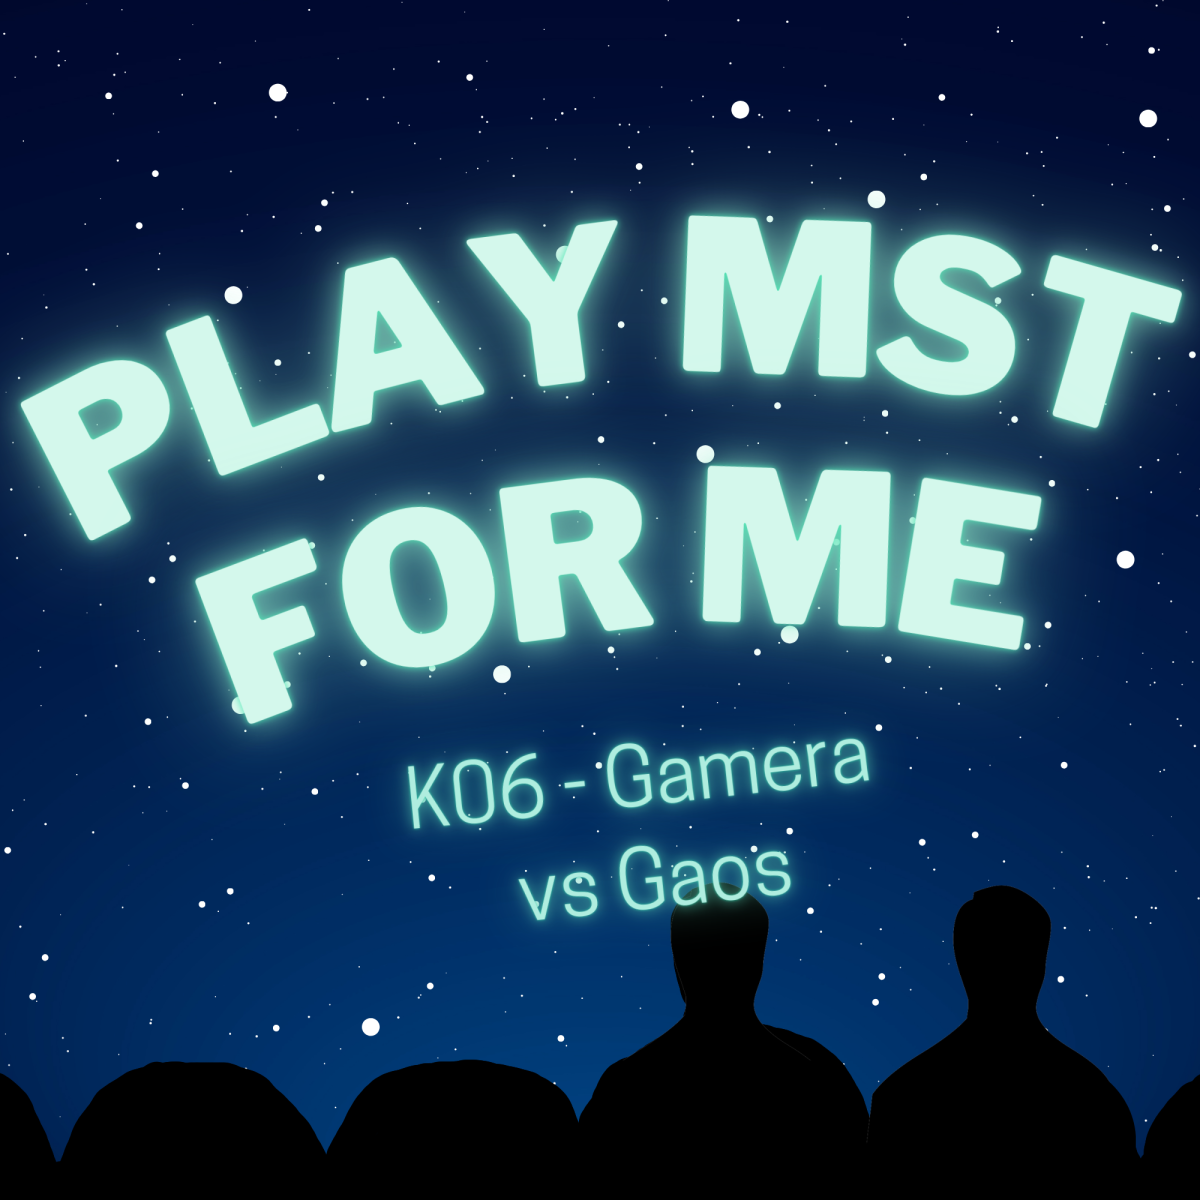 Play MST for Me #6: K06-Gamera vs Gaos